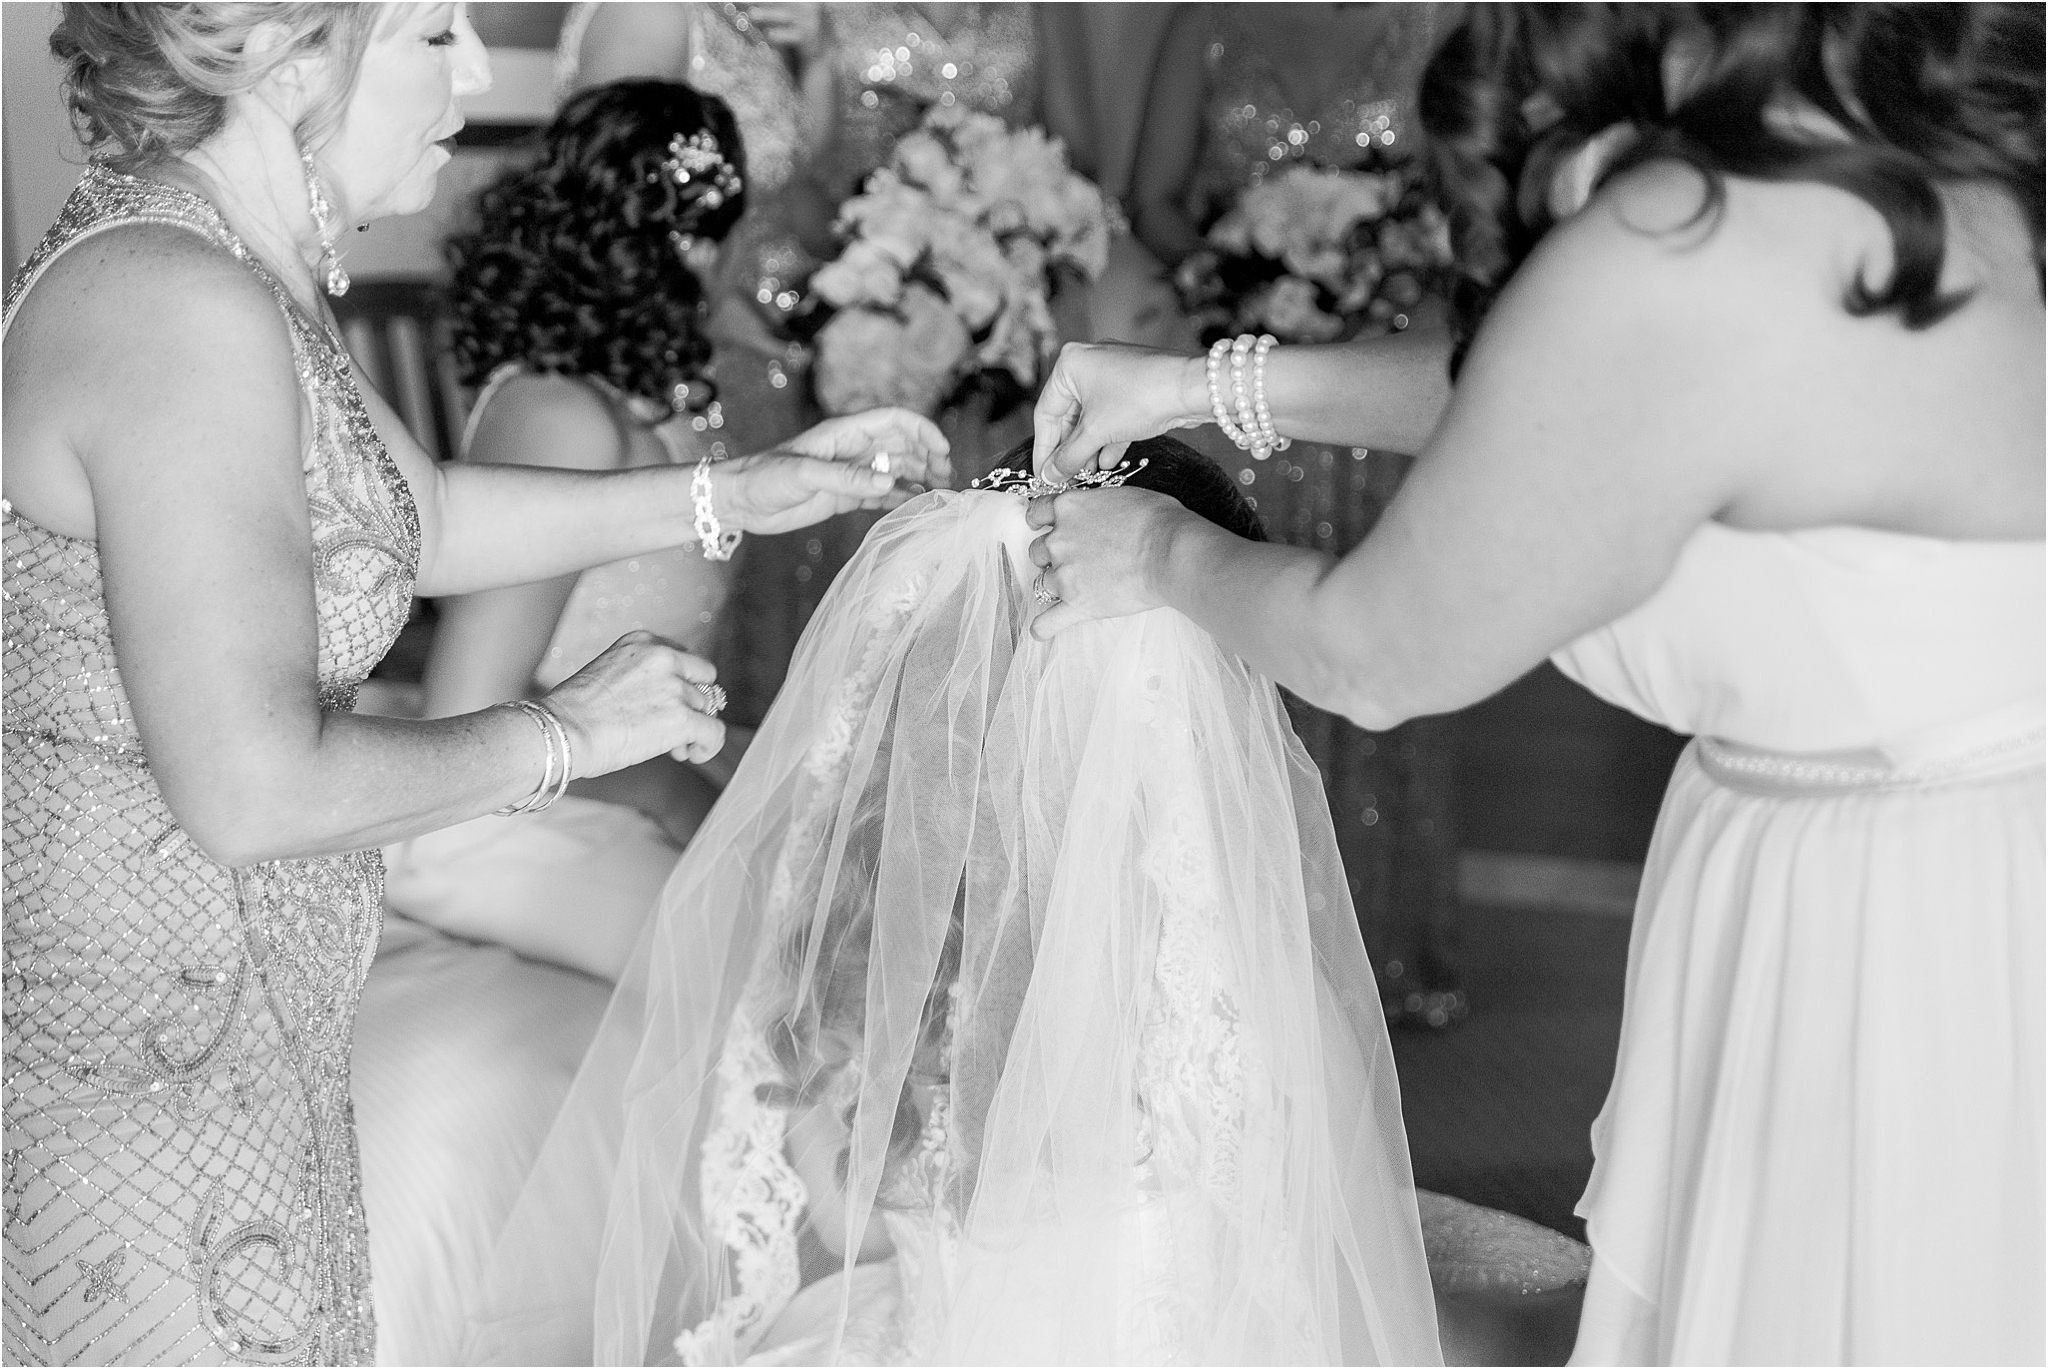 Omni Wedding Photographer | Tucson AZ | Ligia and Arturo getting ready photos | Tucson Wedding Photographer | West End Photography